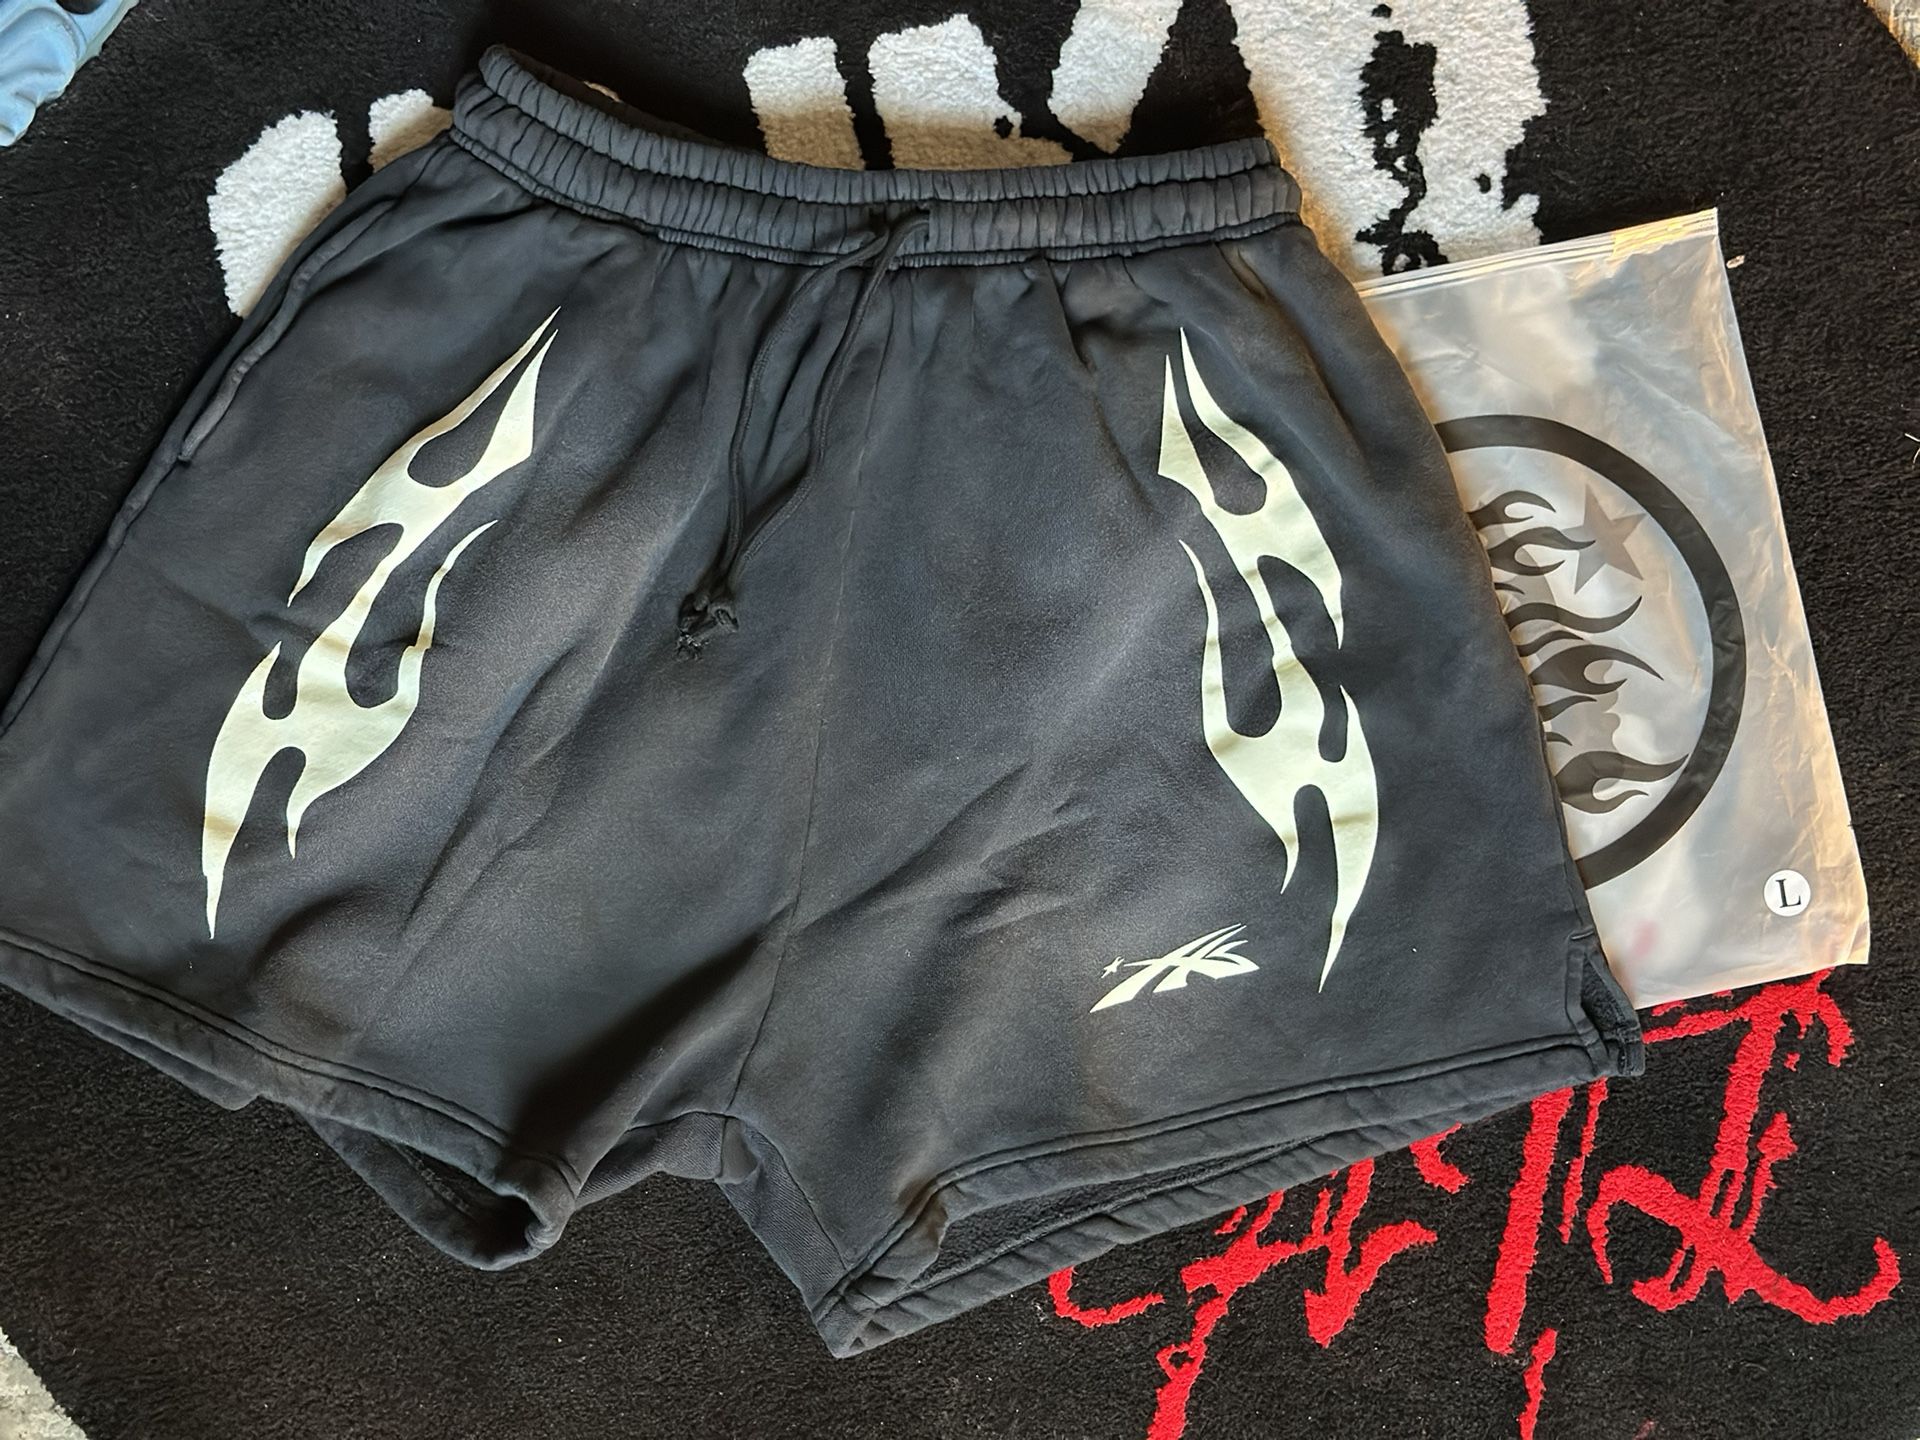 Hellstar Shorts Sz Large - $300